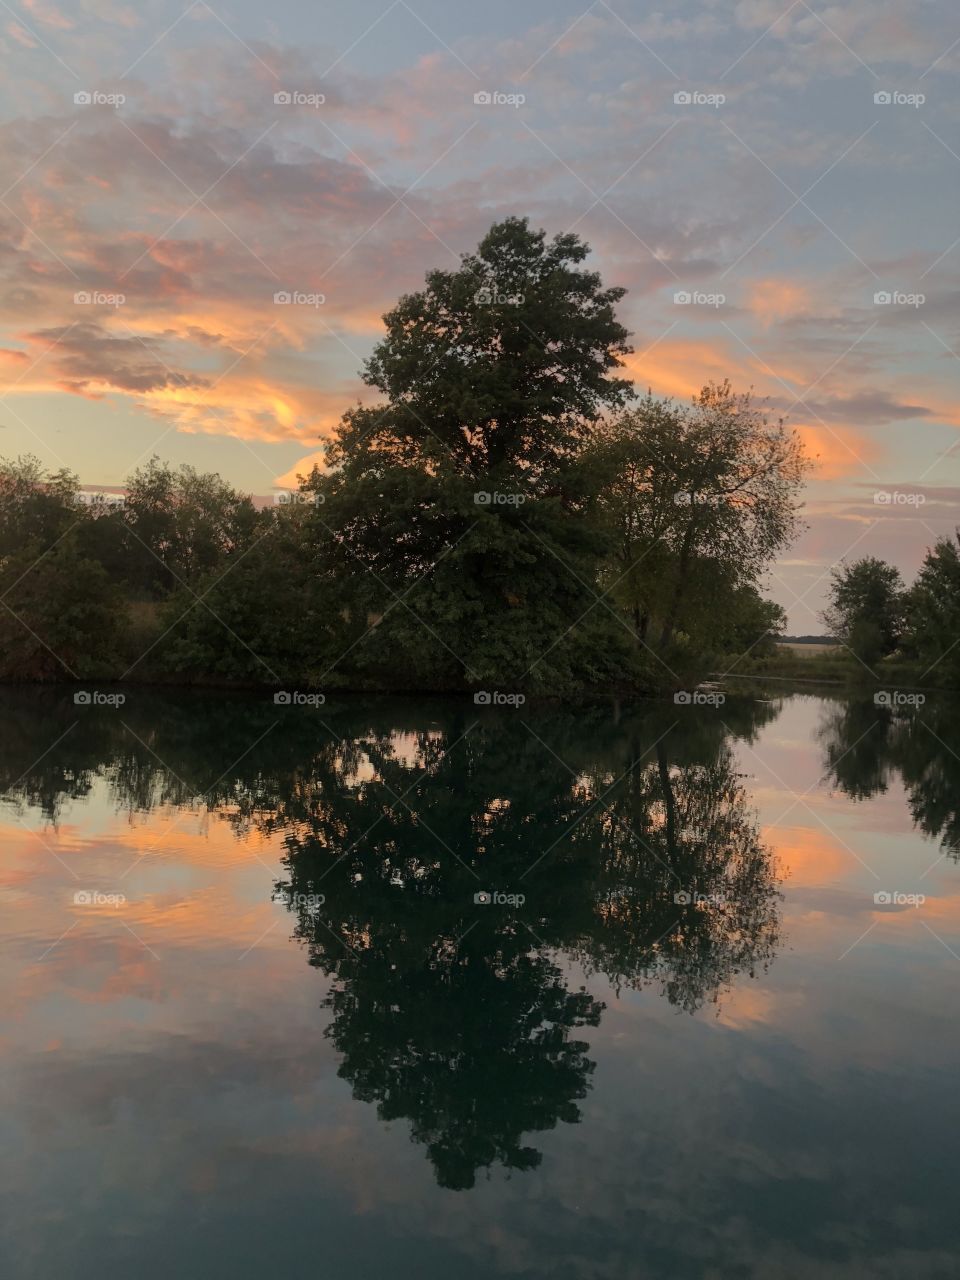 Sunset landscape reflection on a still water pond